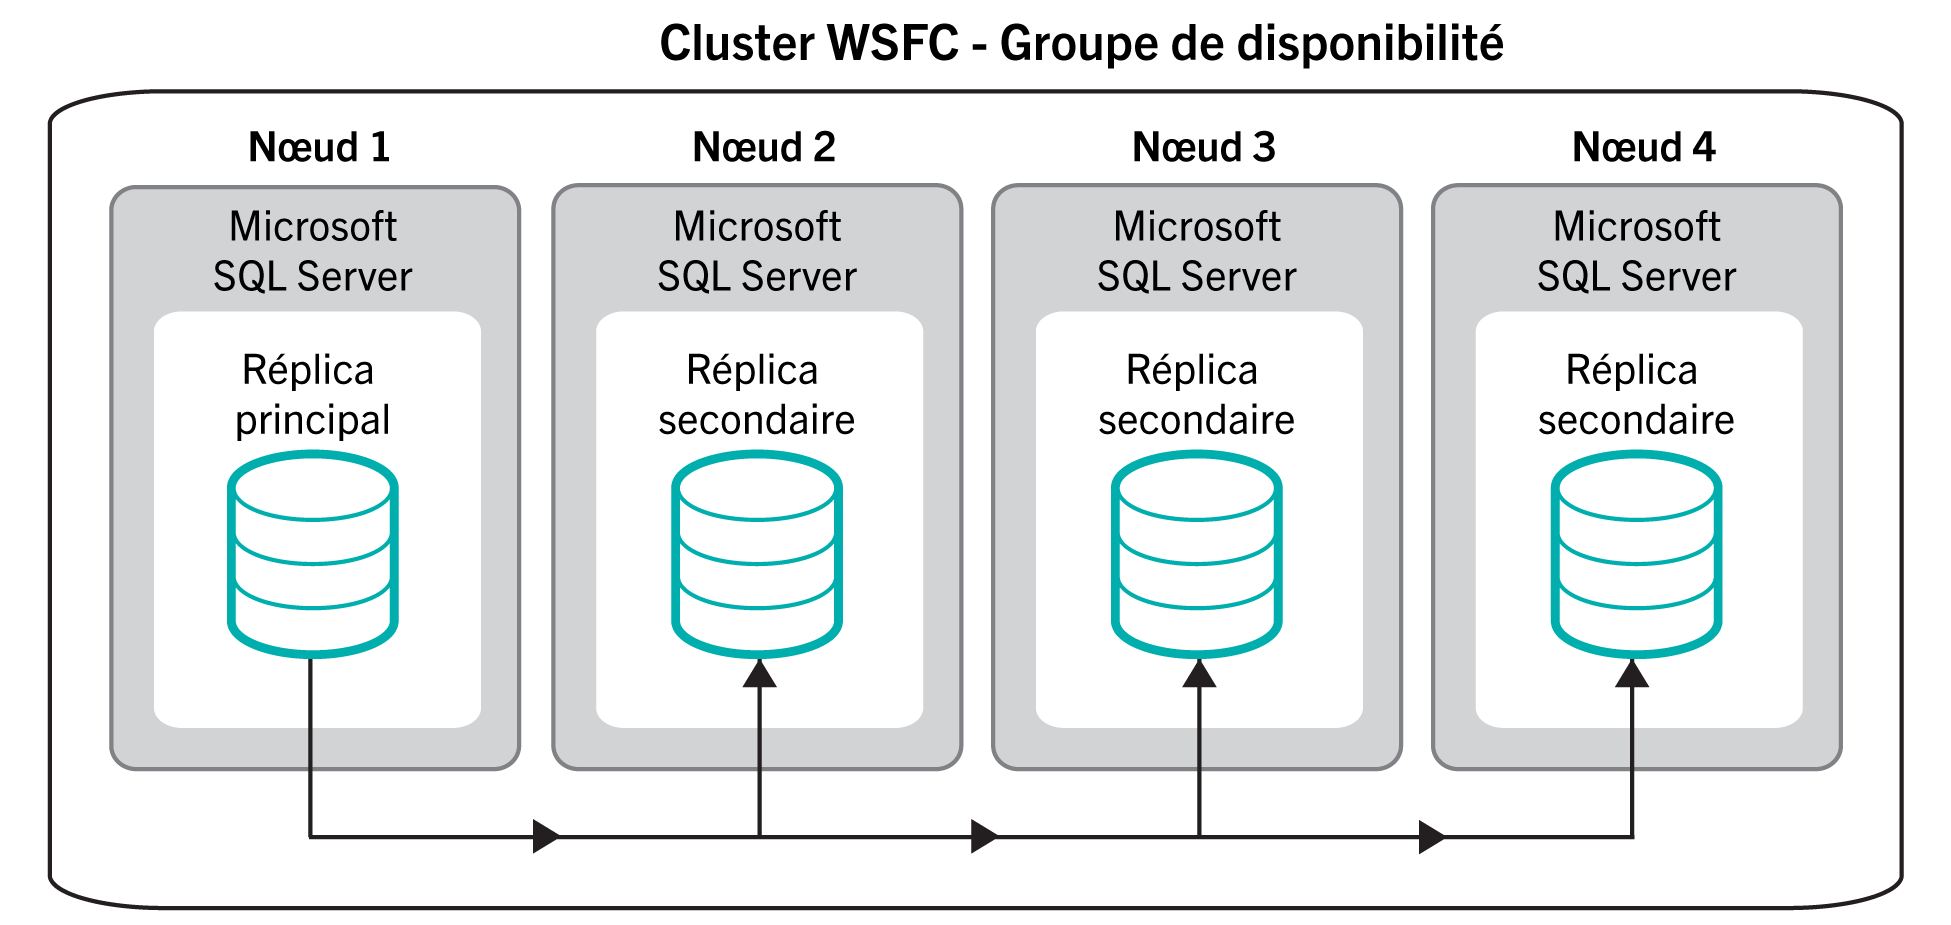 Ce schéma illustre les différents nœuds Microsoft SQL
  Server d'un groupe de disponibilité de base de données haute disponibilité